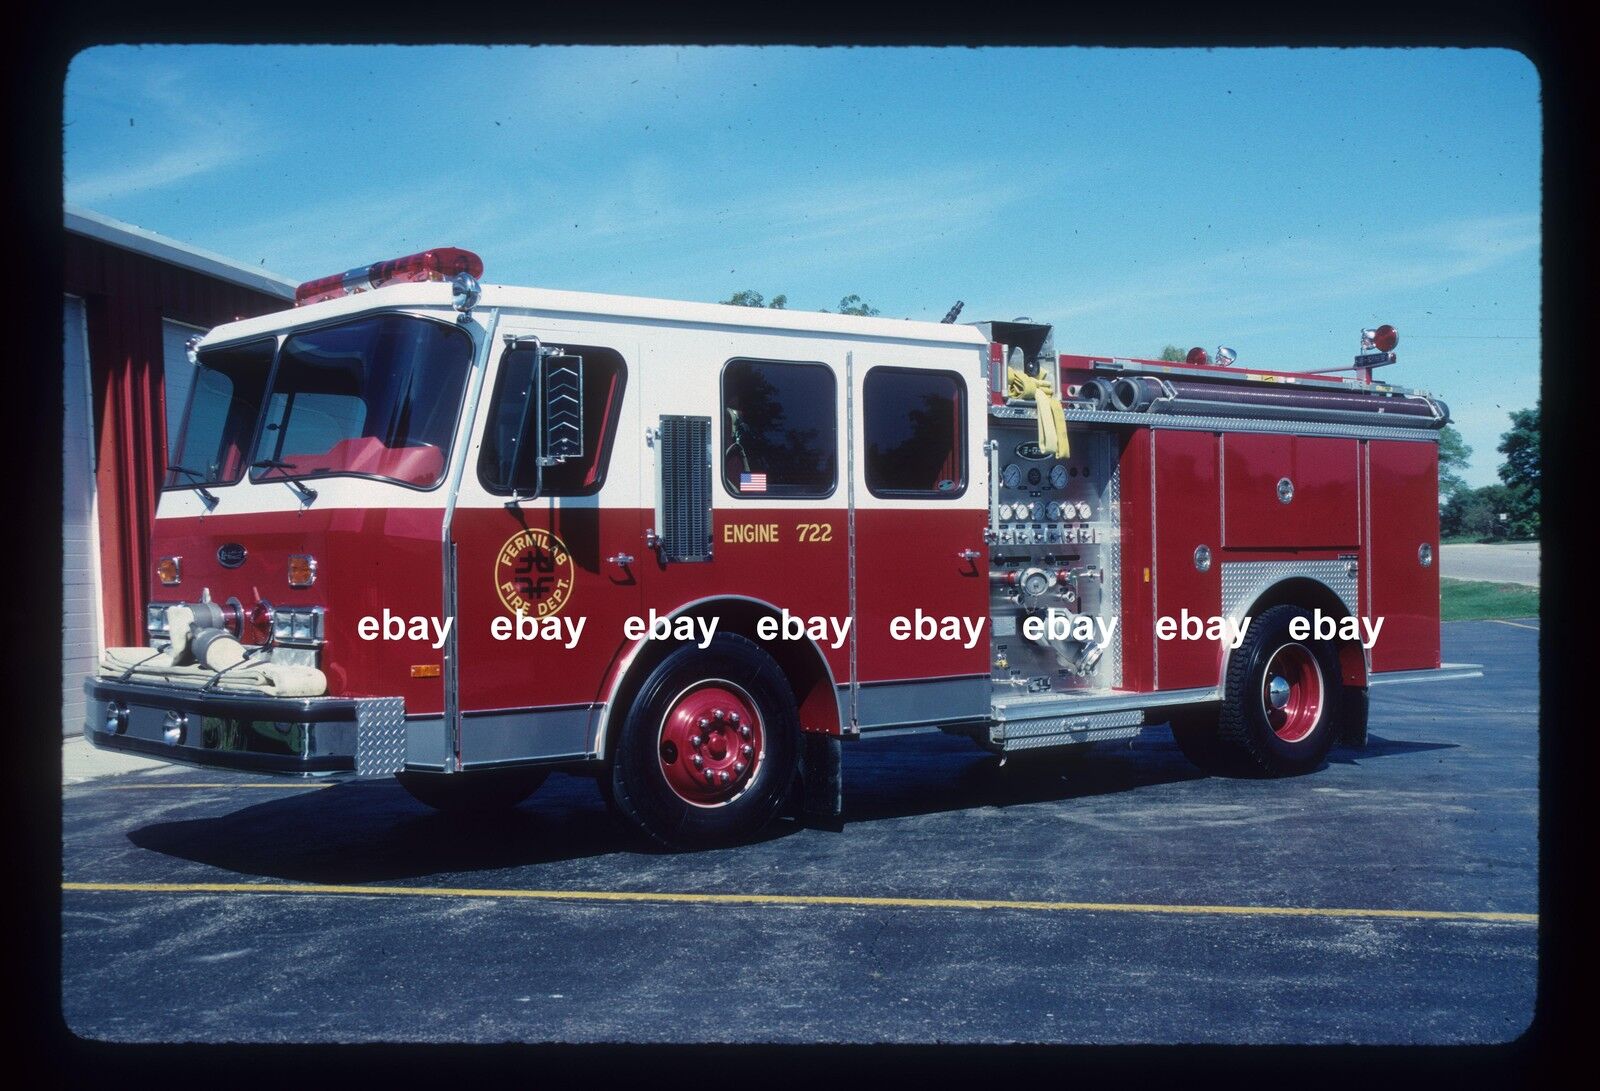 FermiLab Batavia IL 1989 Emergency One pumper Fire Apparatus Slide